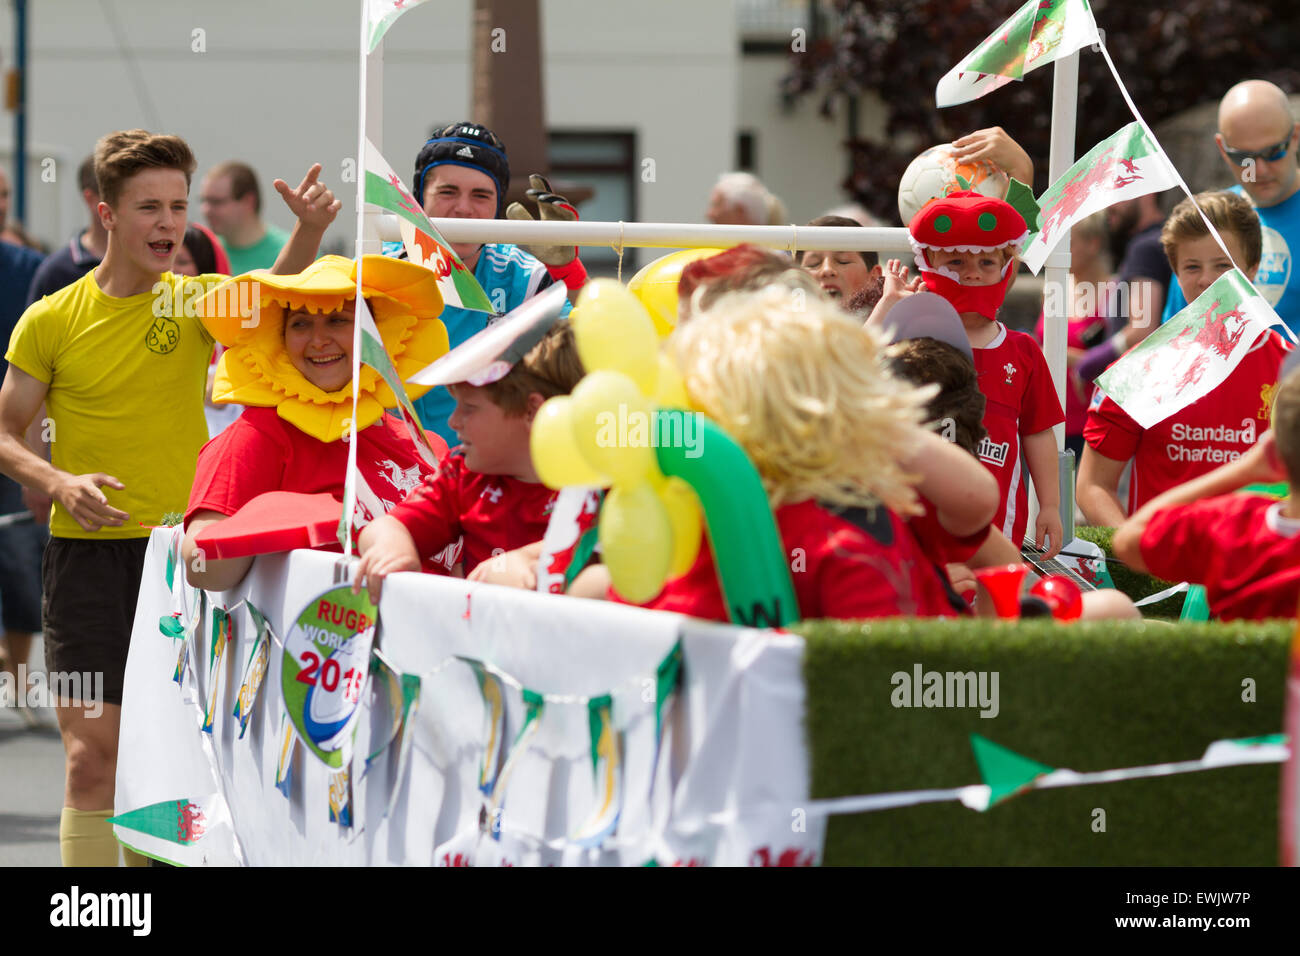 Un flotteur en Carnaval Carnaval St Efface Juin 2015 dans le pays de Galles Pembrokeshire. Parade de la ville. Banque D'Images